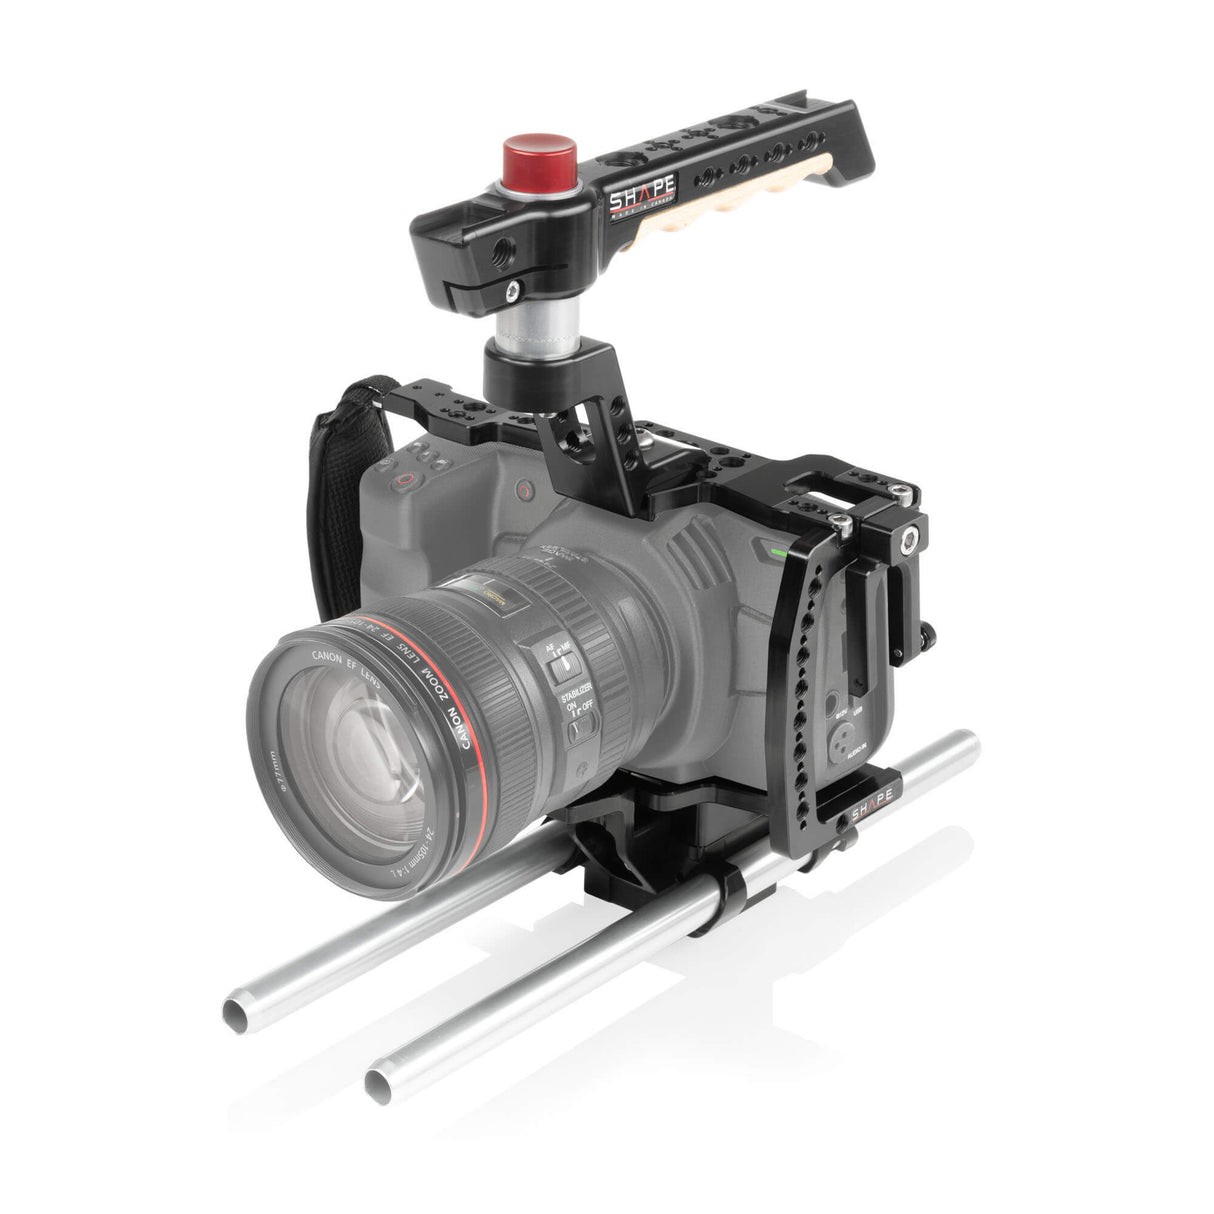 Cage pour Blackmagic Pocket Cinema Camera 4K (BMPCC4K) avec système de rod blocs 15 mm